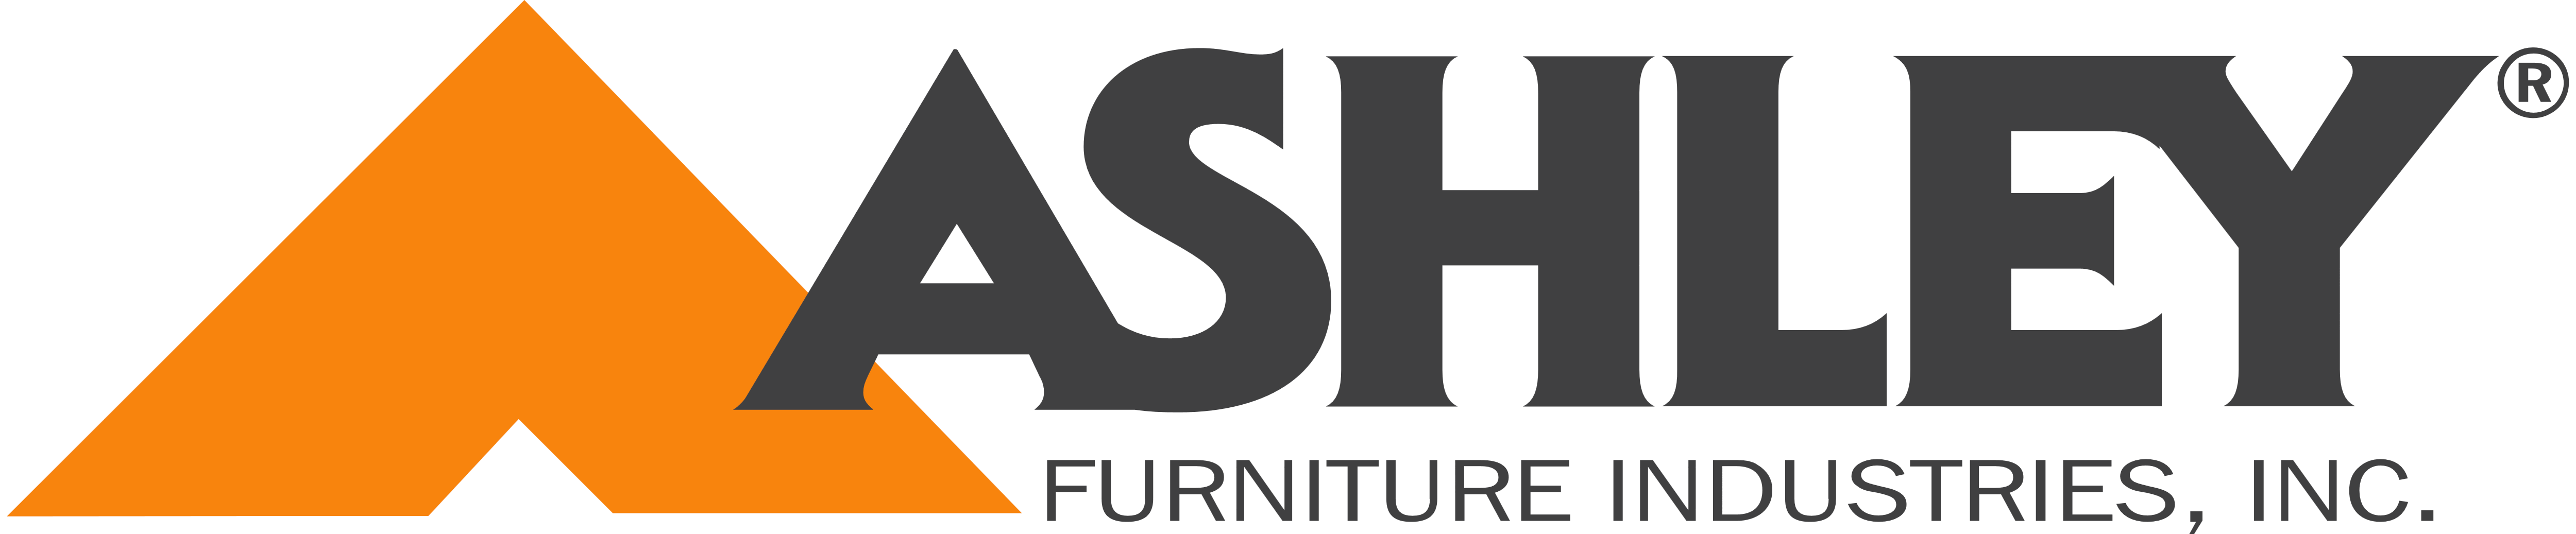 Ashley Furniture Logos